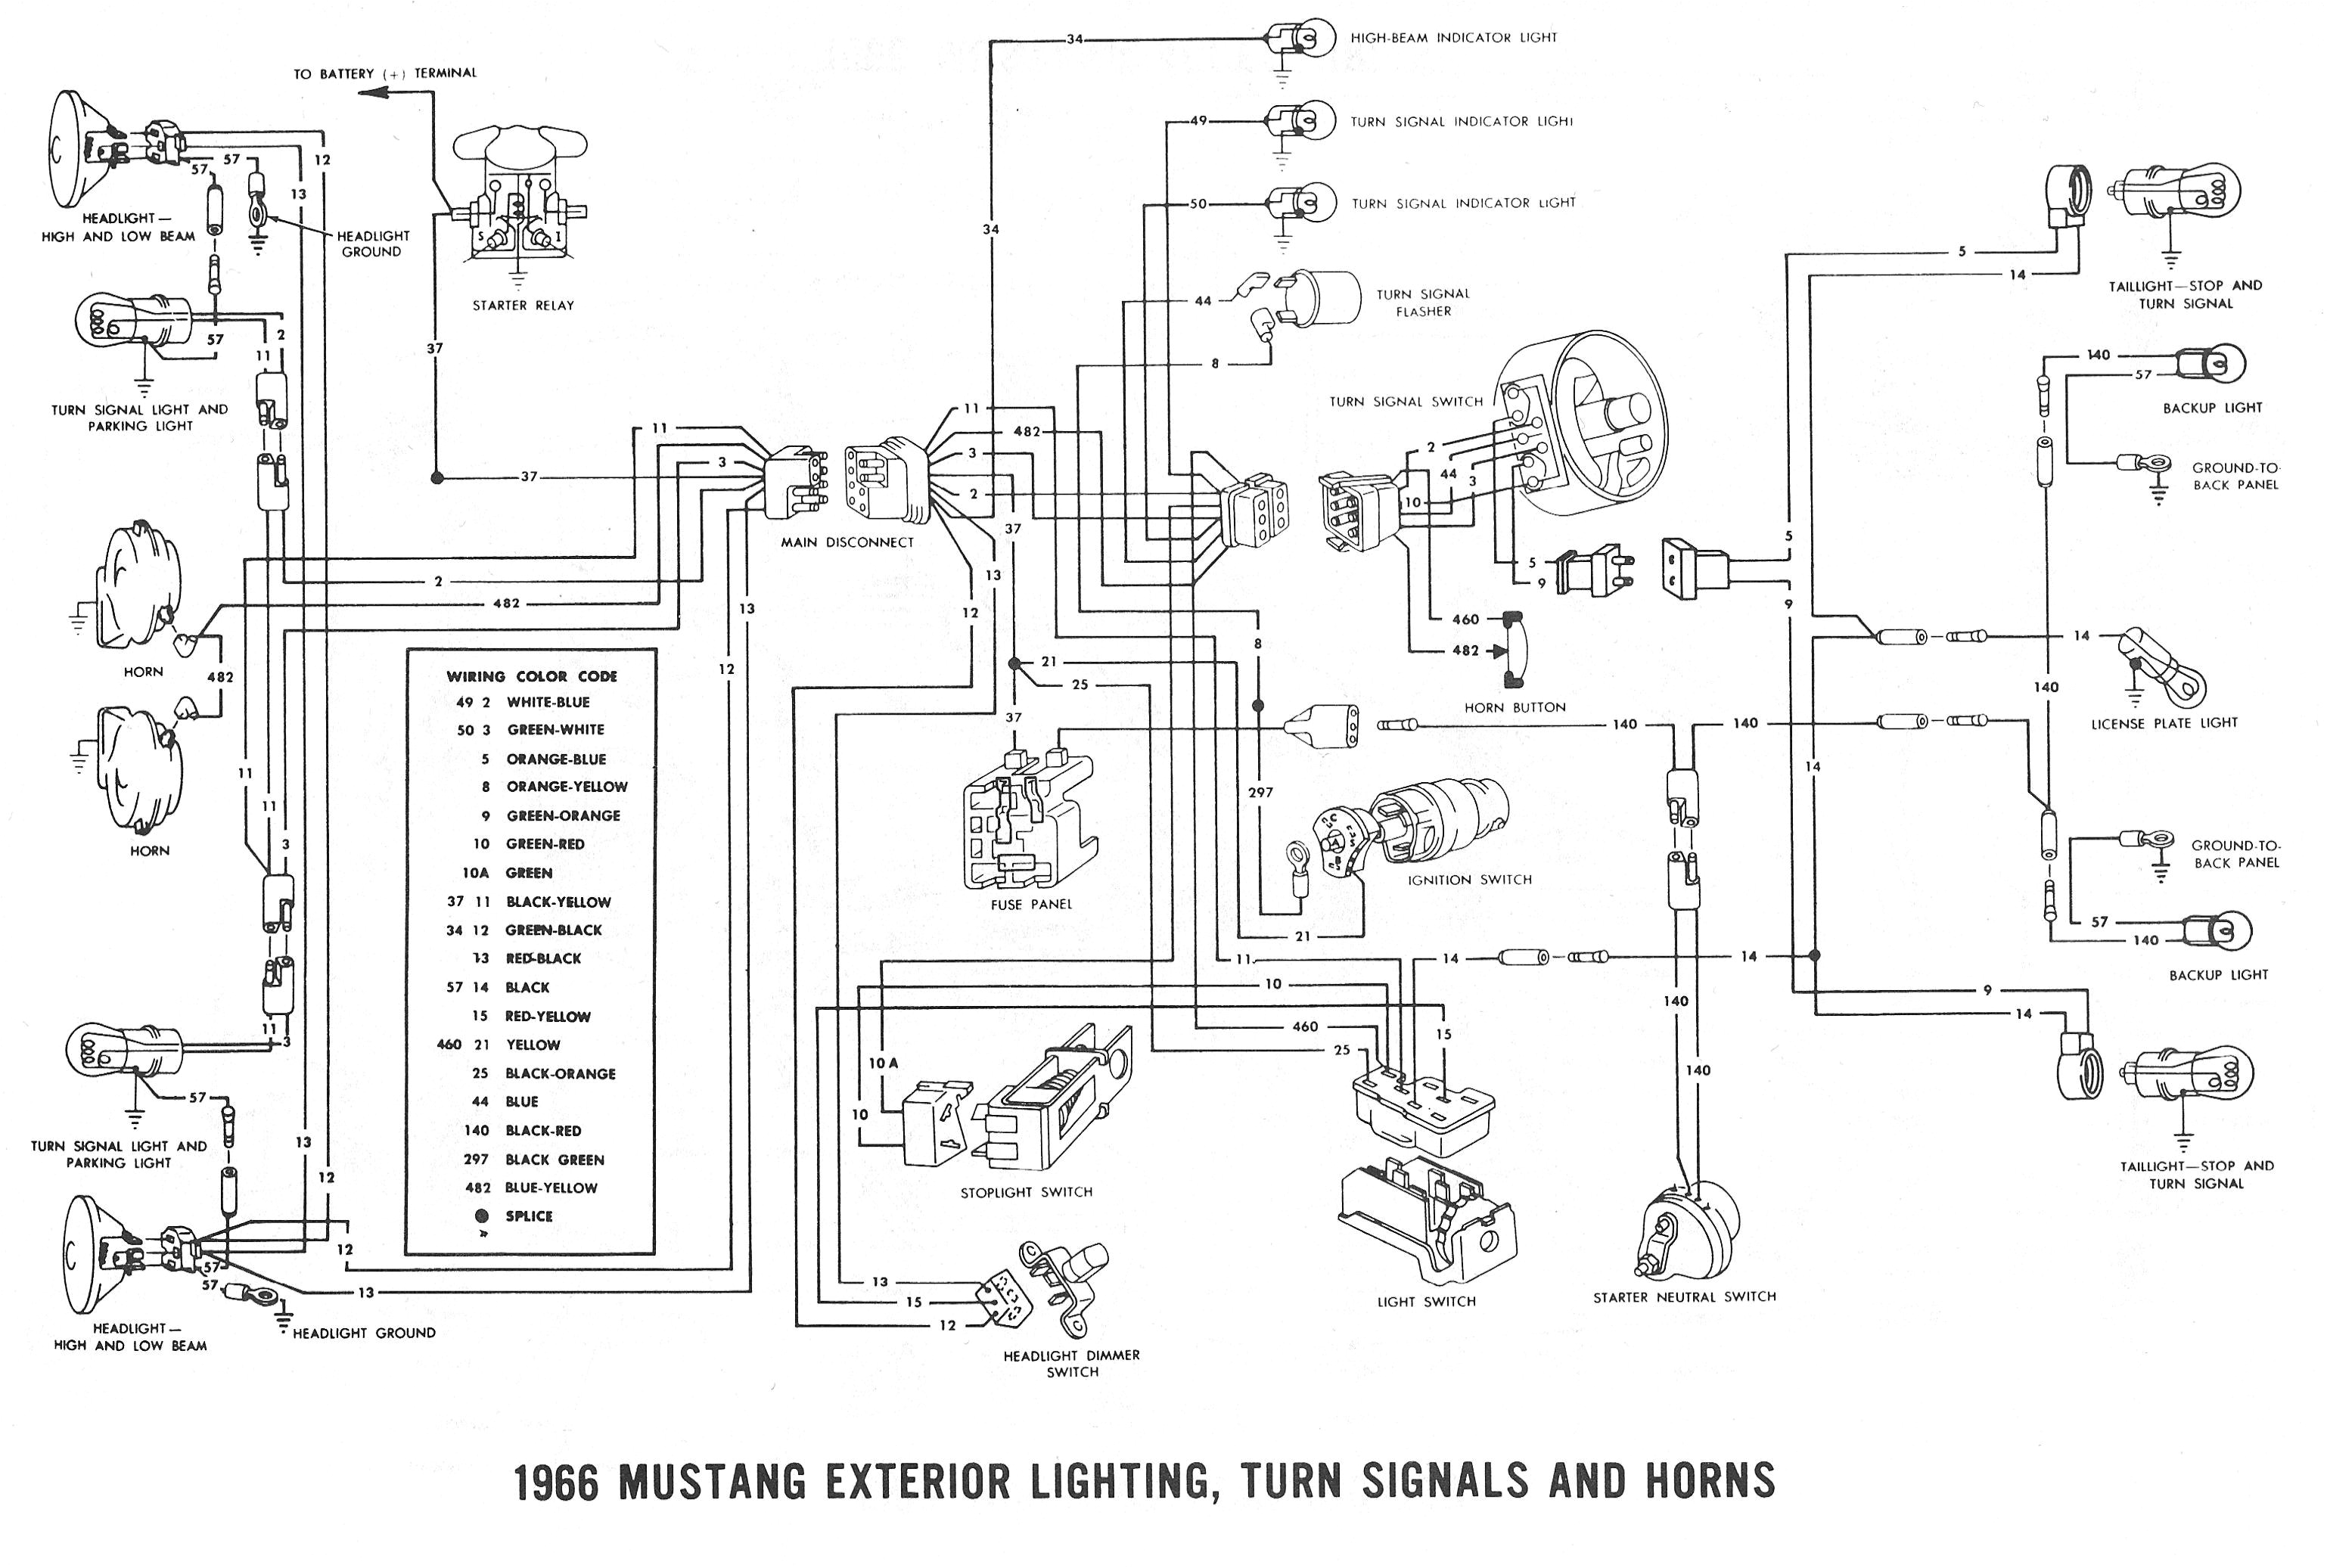 94 mustang gt wiring diagram free download wiring diagram 1994 mustang turn signal wiring diagram